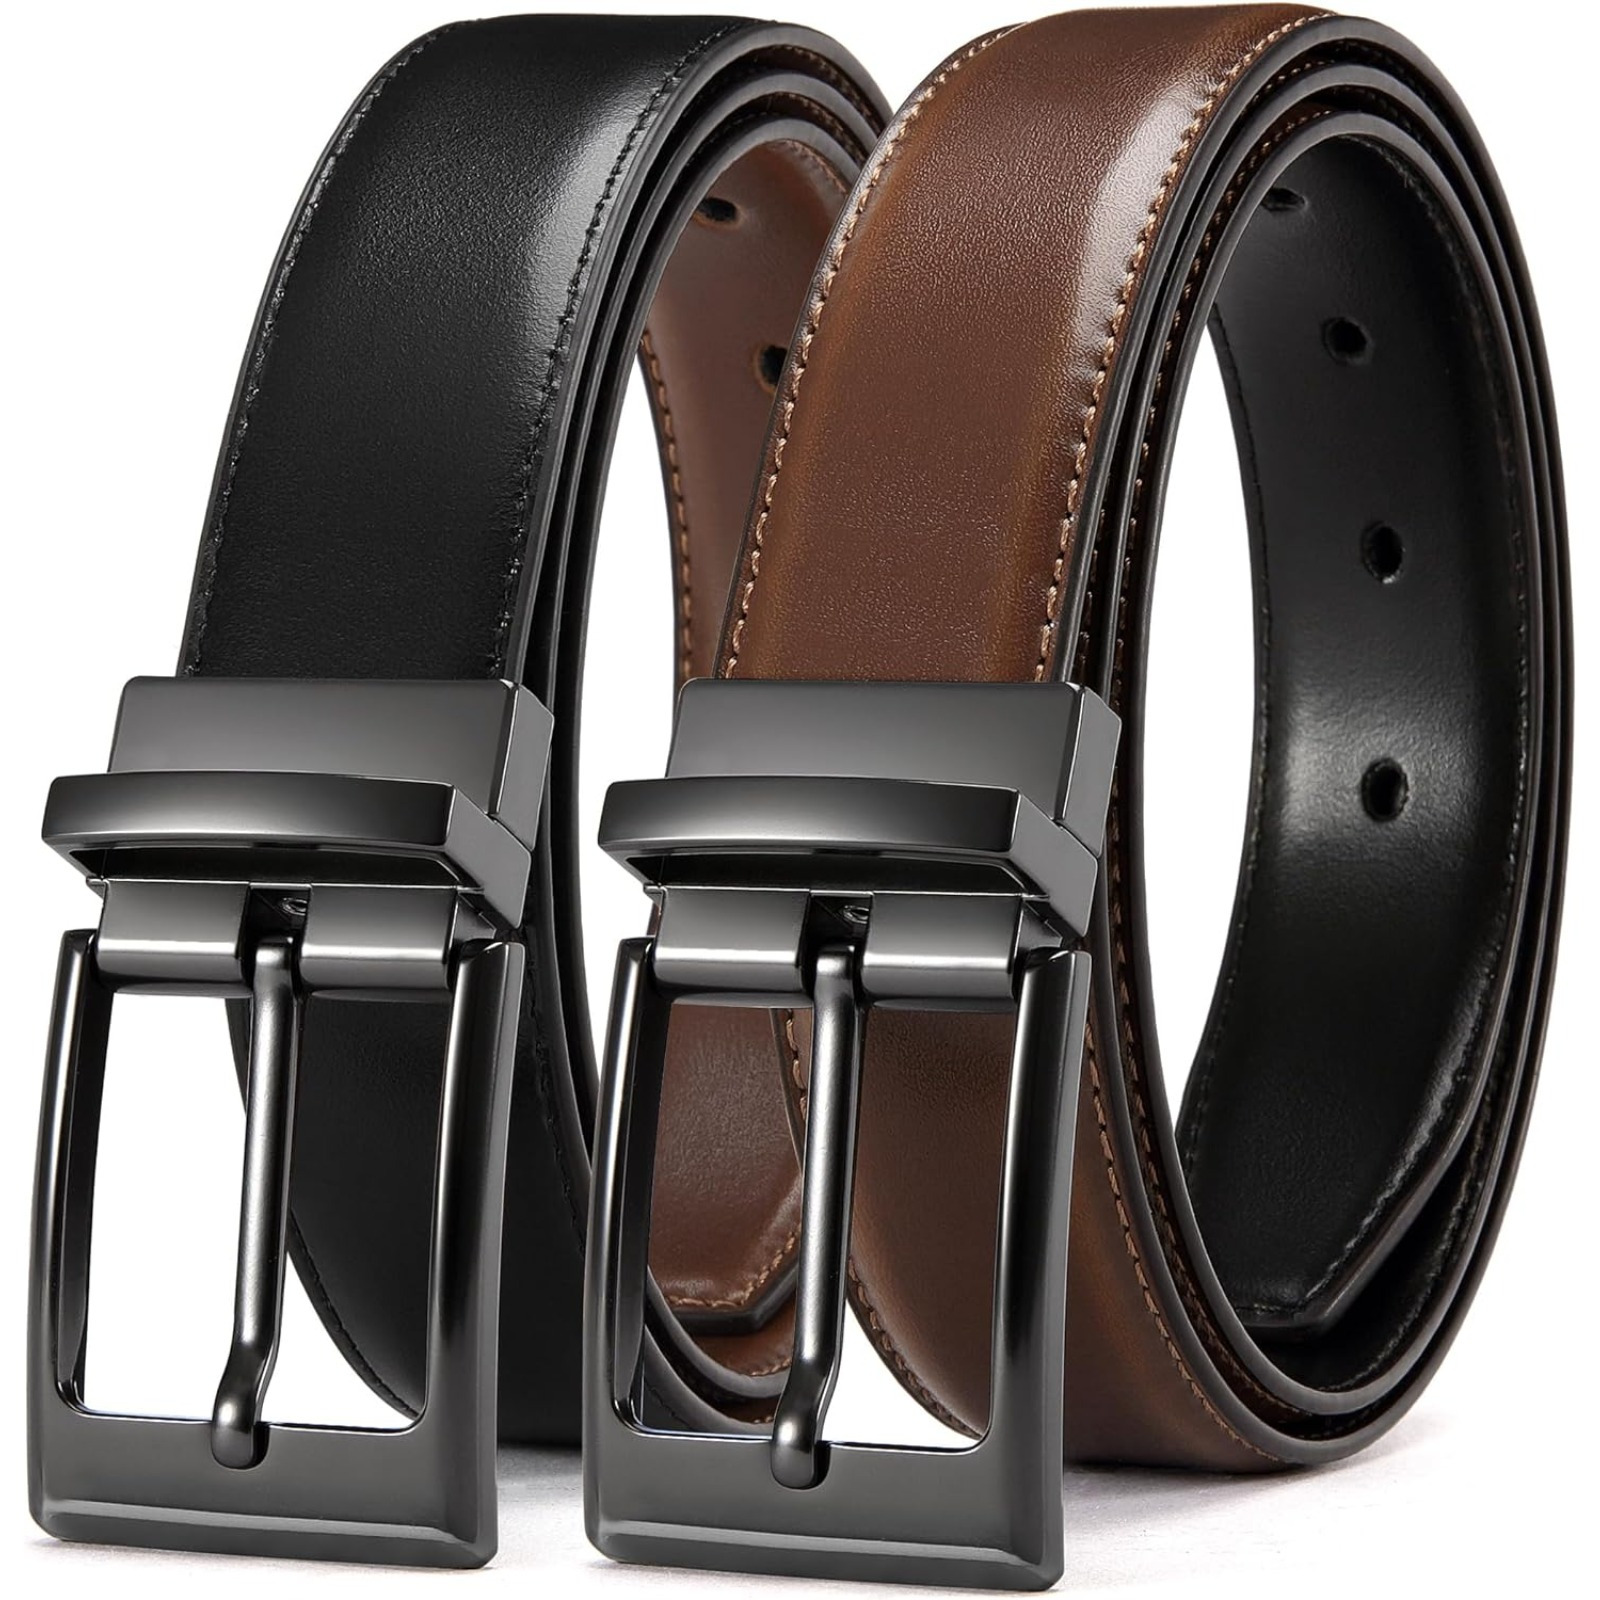 

Chaoren Leather Belt For Men - 1.25" Reversible Mens Belt For Dress Pants - 2 Styles In 1 Belt